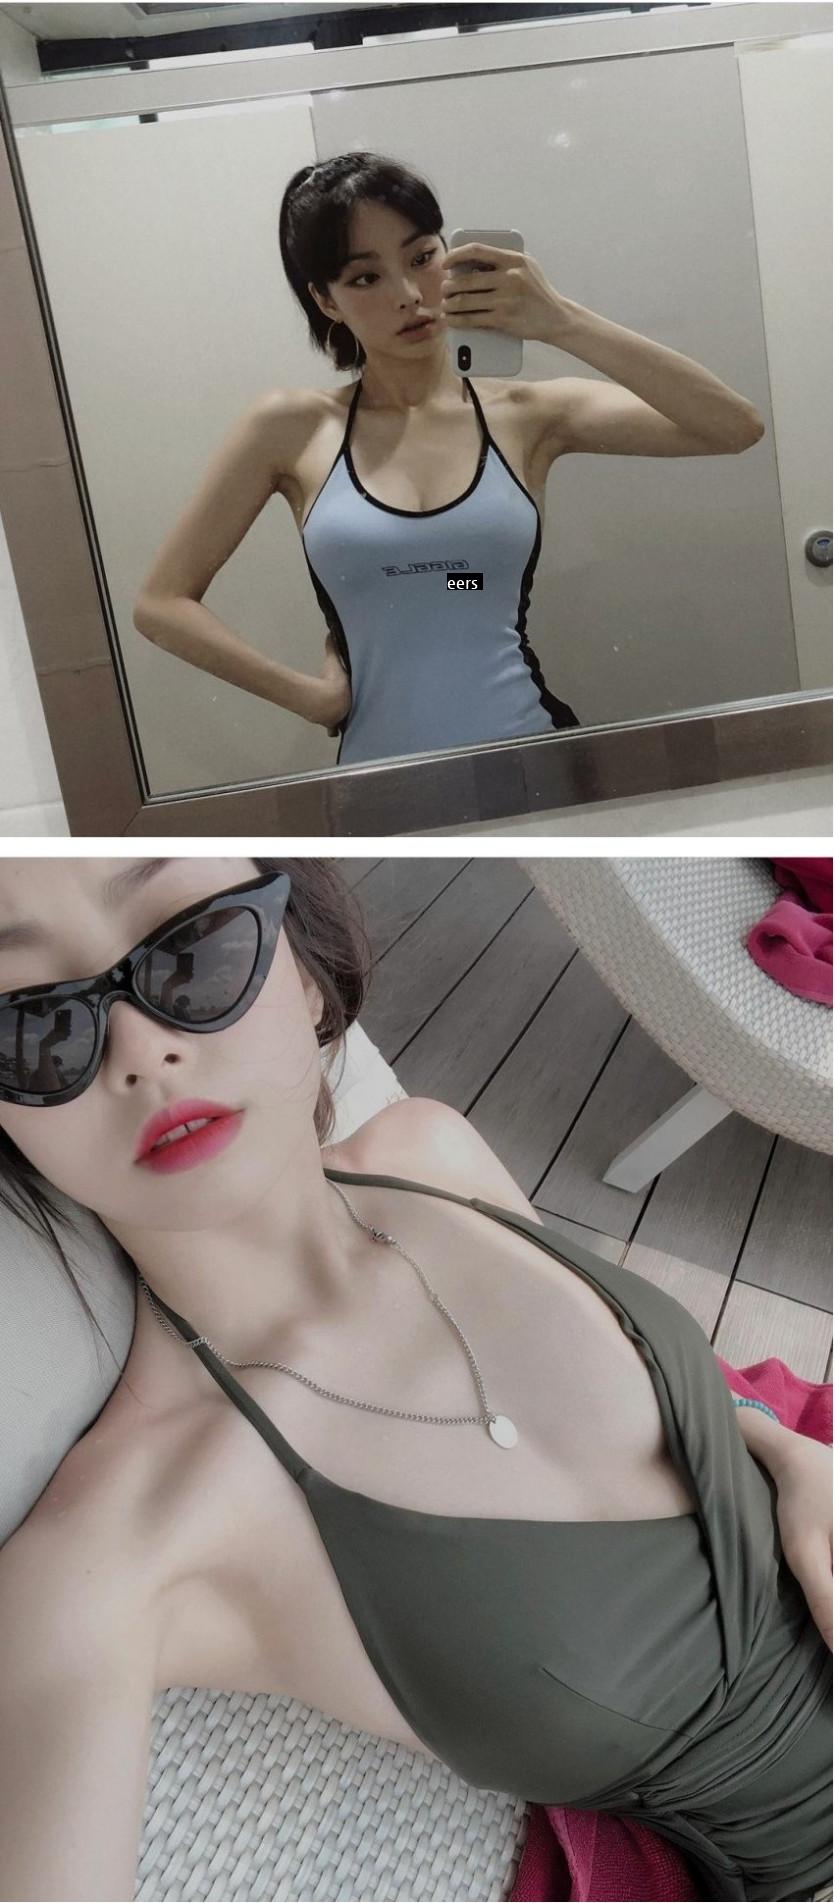 Good. Director Lee Mina's swimsuit selfie.